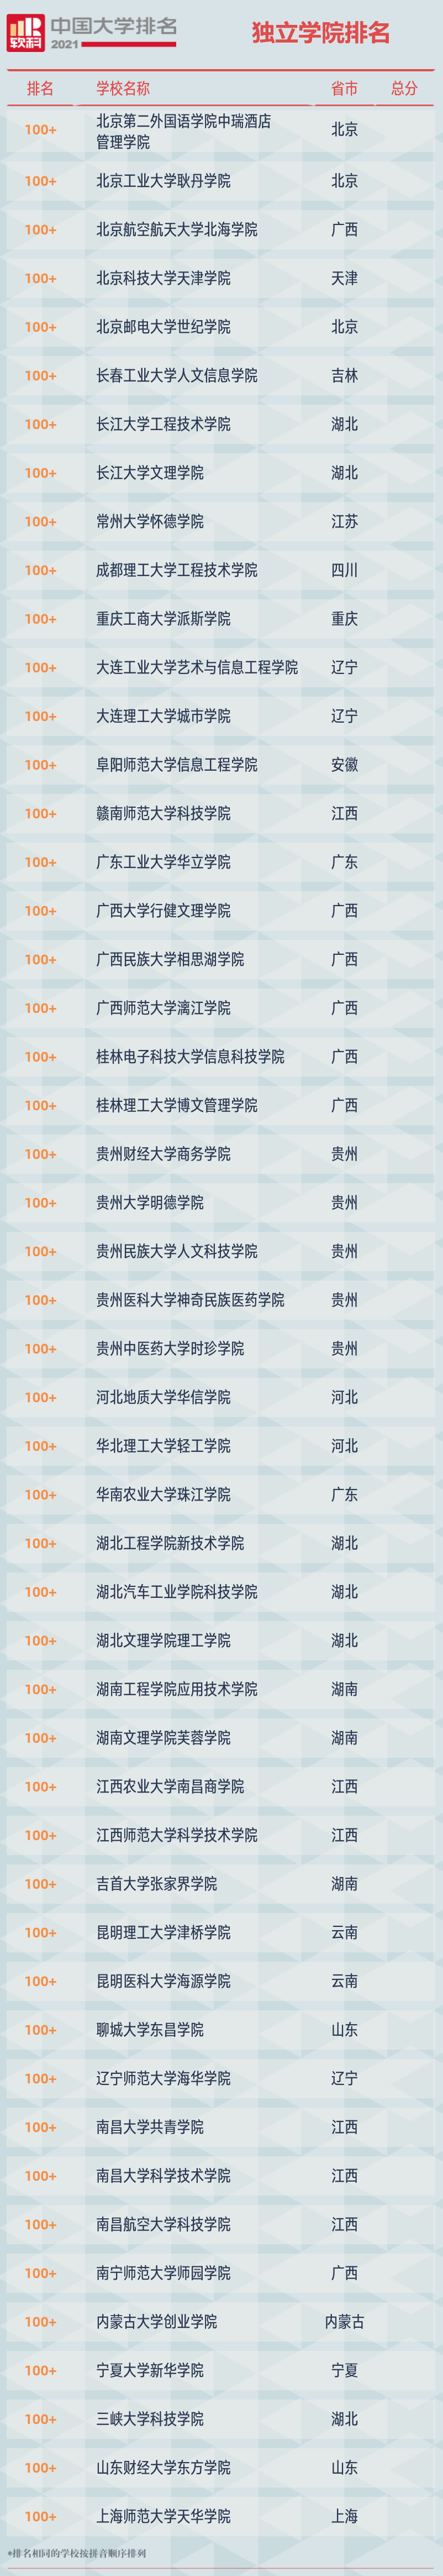 2021软科中国独立学院排名榜单